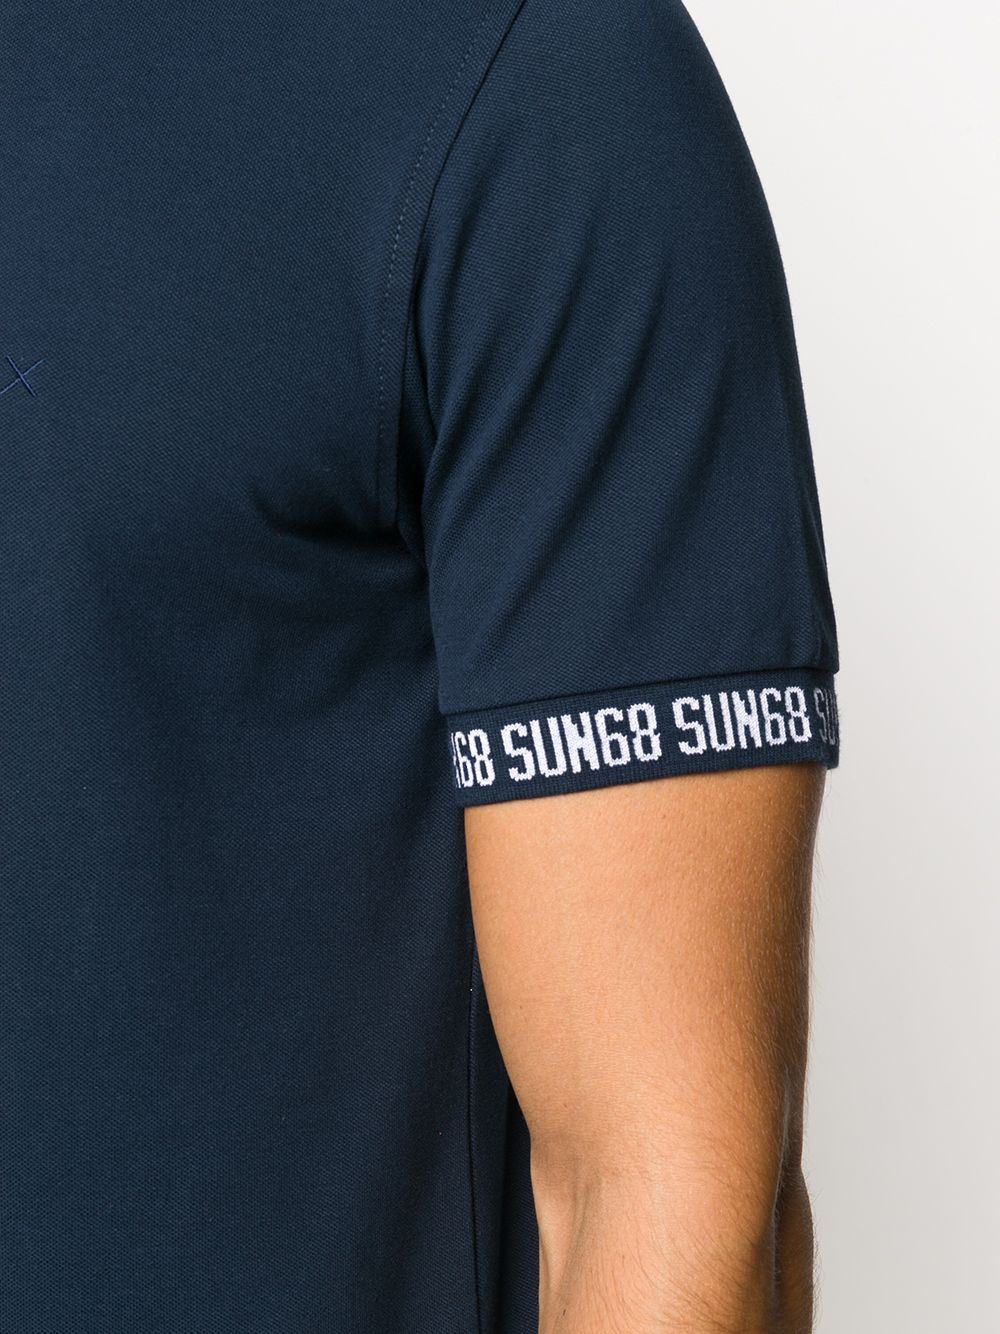 фото Sun 68 рубашка поло с принтом